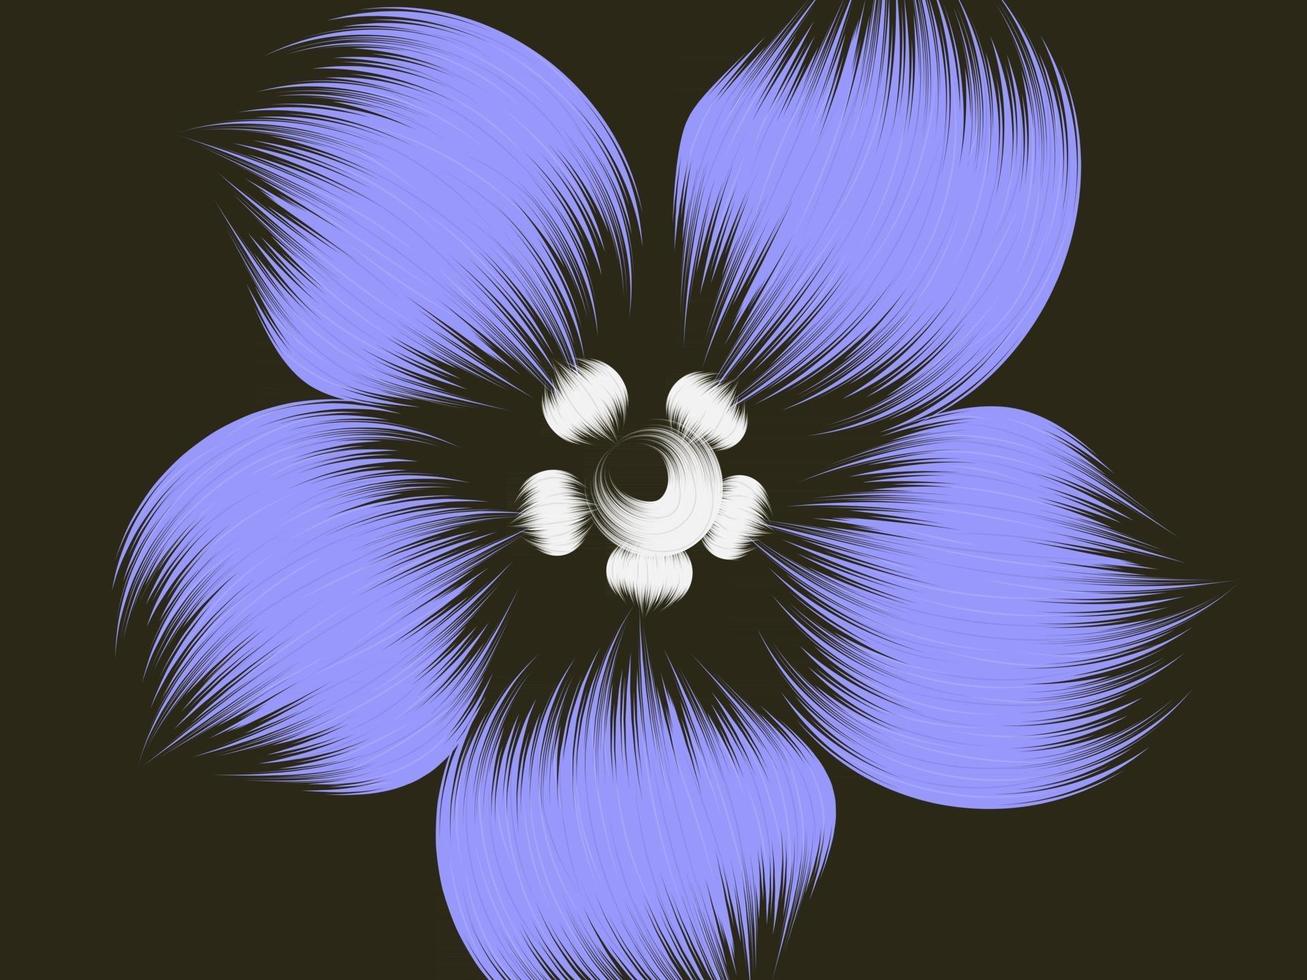 blå blommig bakgrund vektor